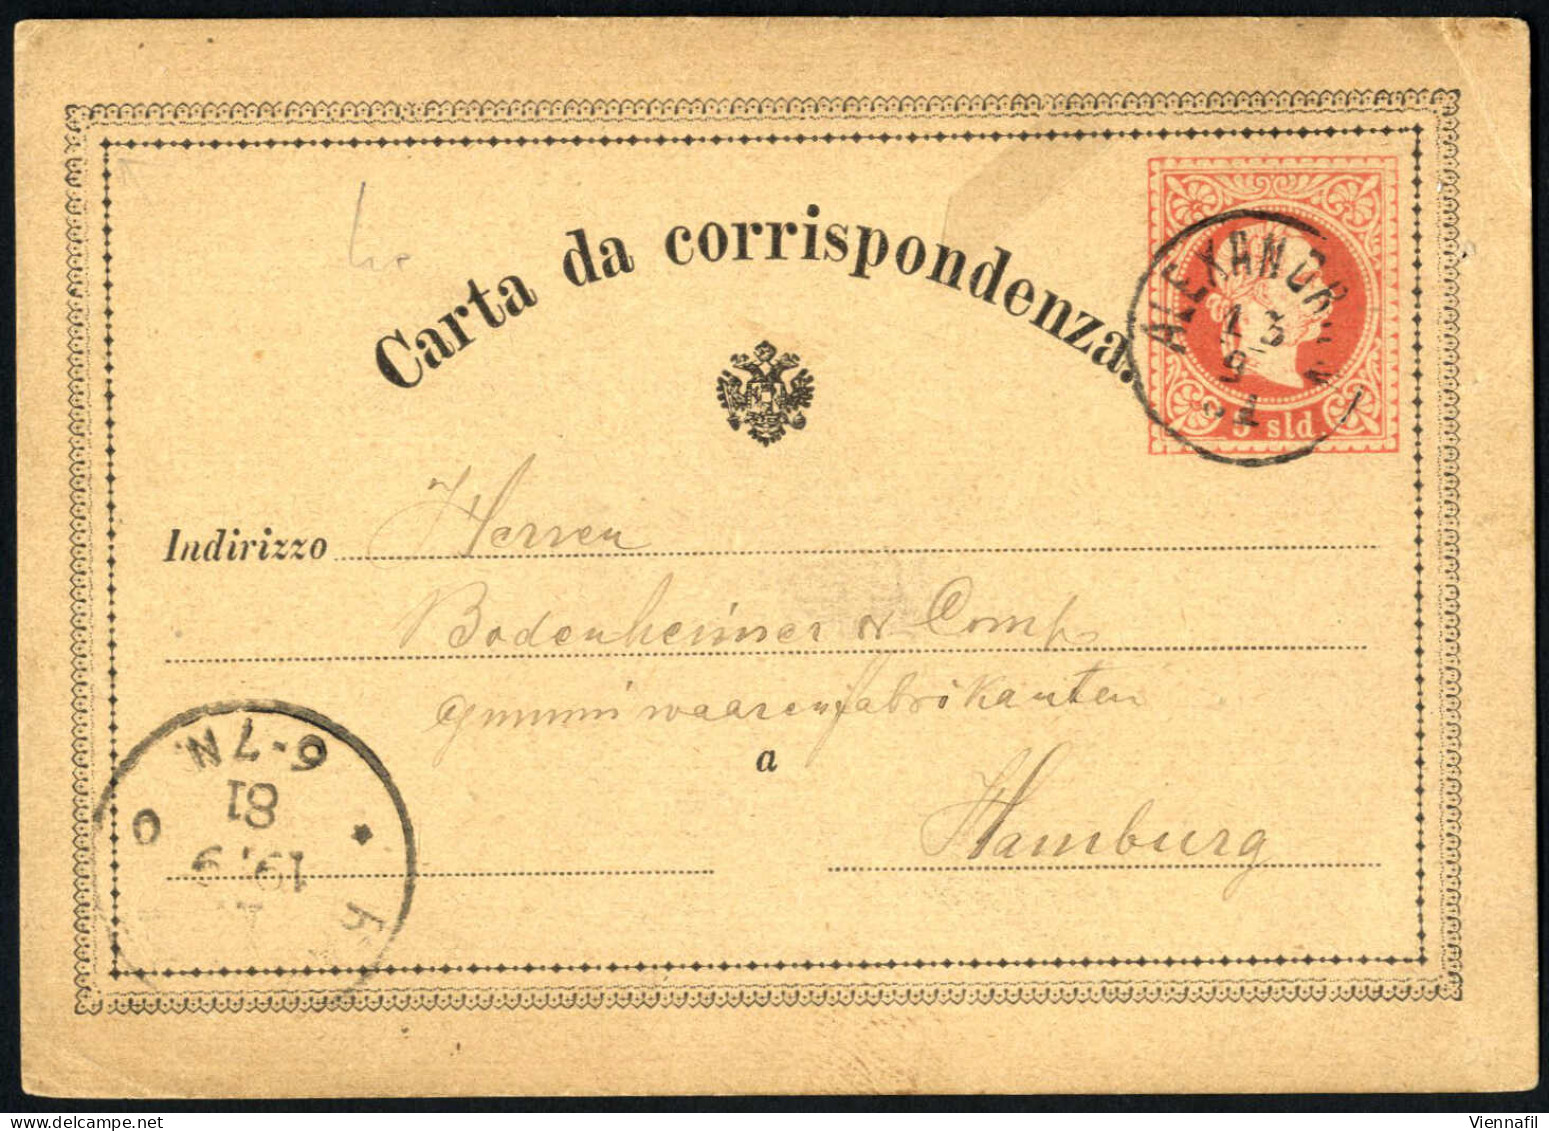 cover Österreichische, deutsche und französische Levante 1862/1914, interessantes Brieflot mit ca. 90 Belegen, dabei auc